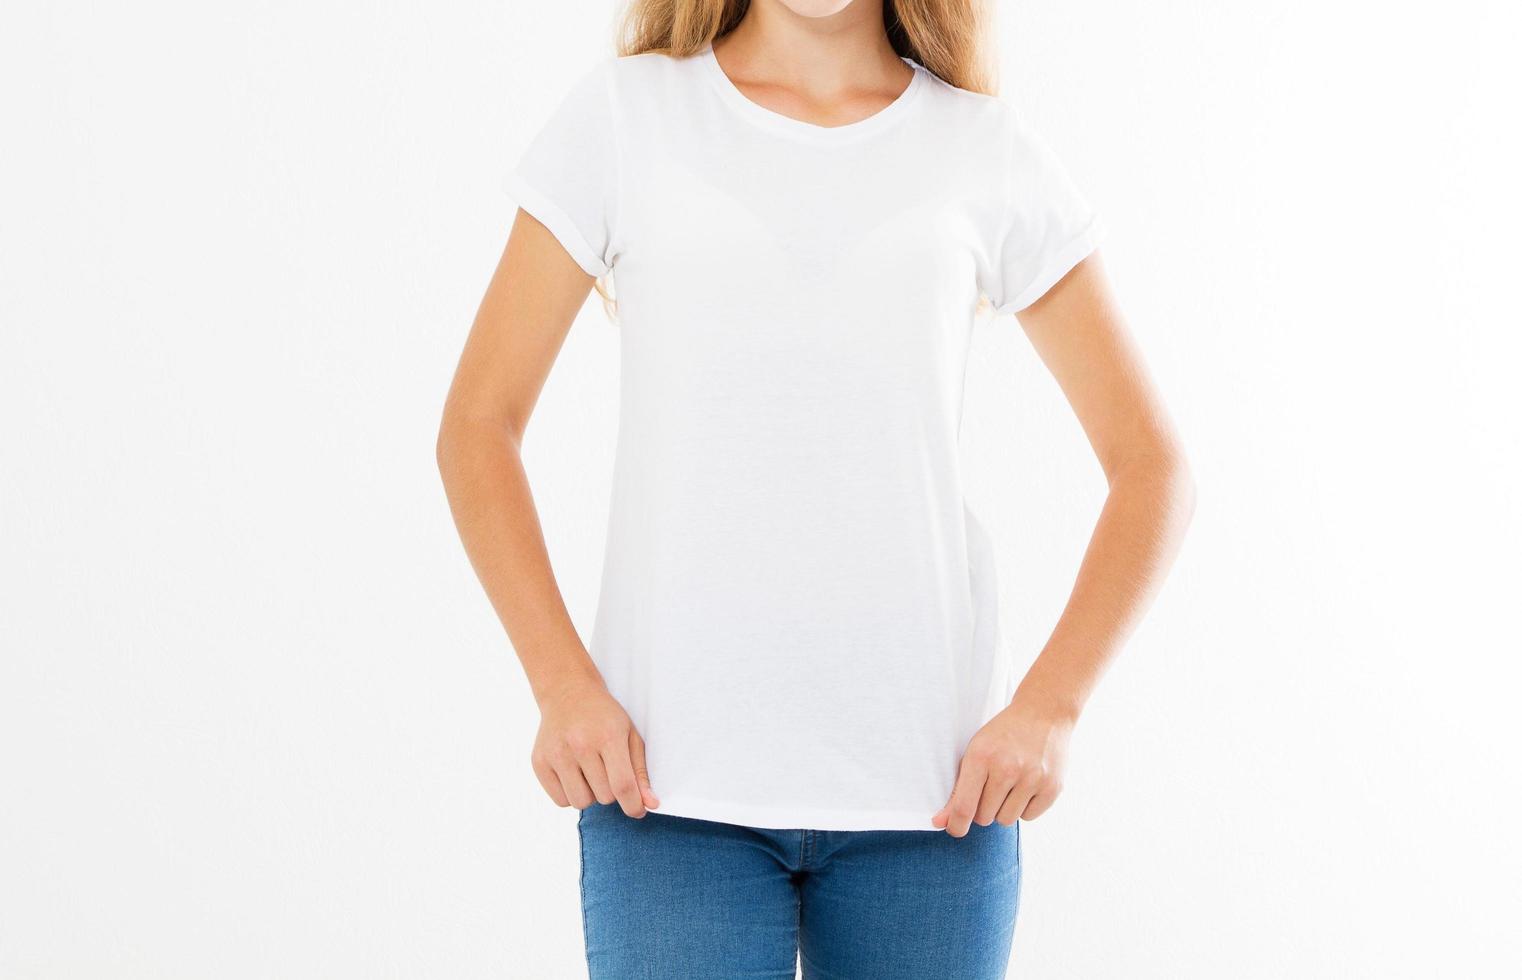 camiseta blanca en una chica con cuerpo perfecto, de mujer simulada 7640545 Foto de stock en Vecteezy